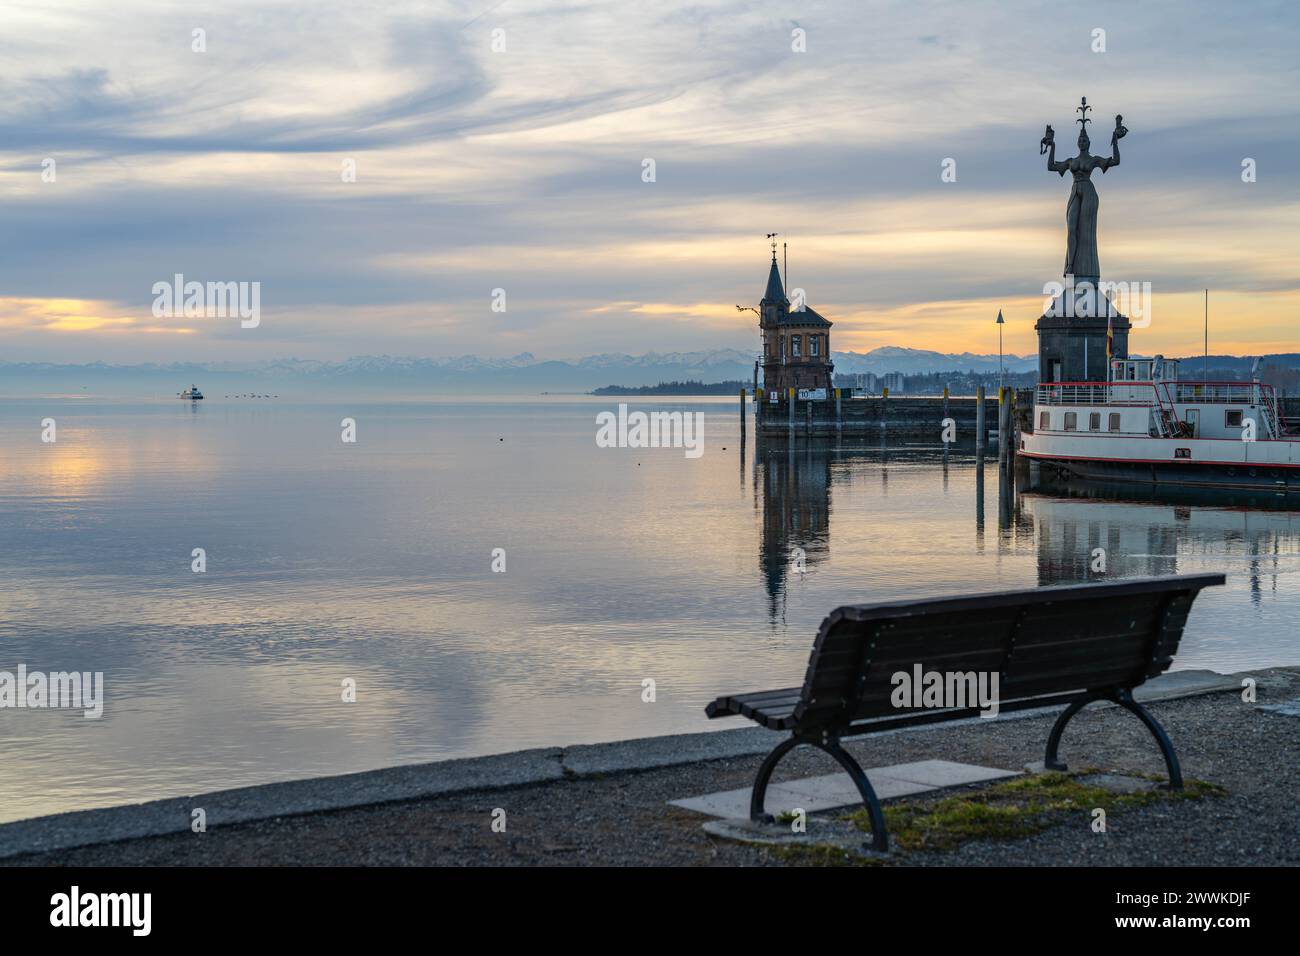 Beschreibung: Blick auf die Hafeneinfahrt von Konstanz mit der Imperia-Statue und der Katamaran-Fähre auf dem See und den schneebedeckten Alpen am Hor Stock Photo